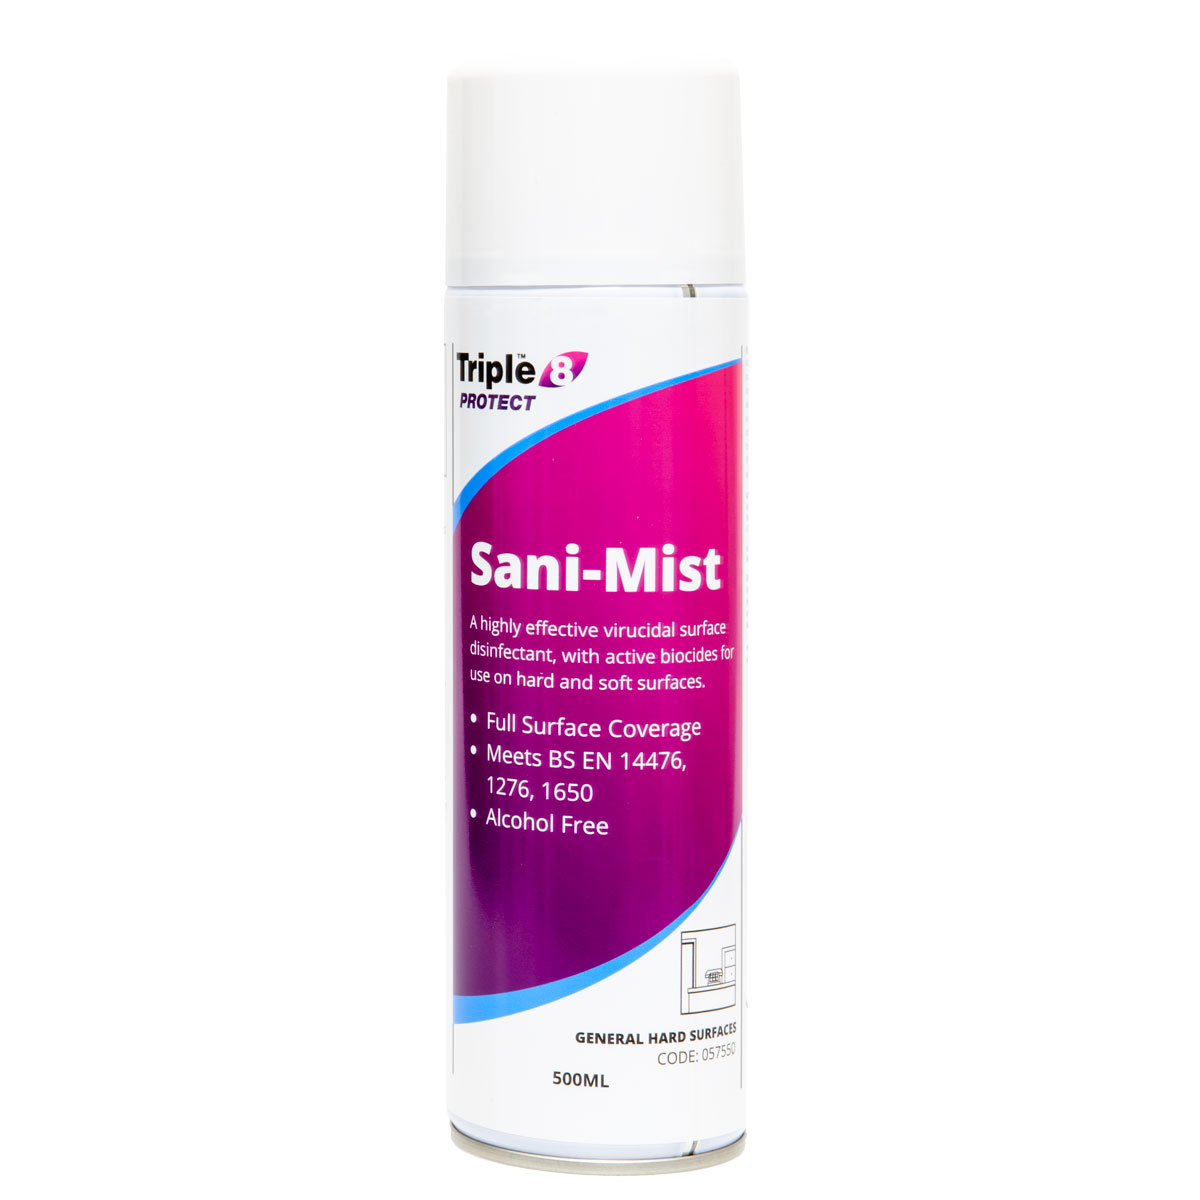 Triple 8 Protect Sani-Mist Sanitiser Aerosol Spray 500ml